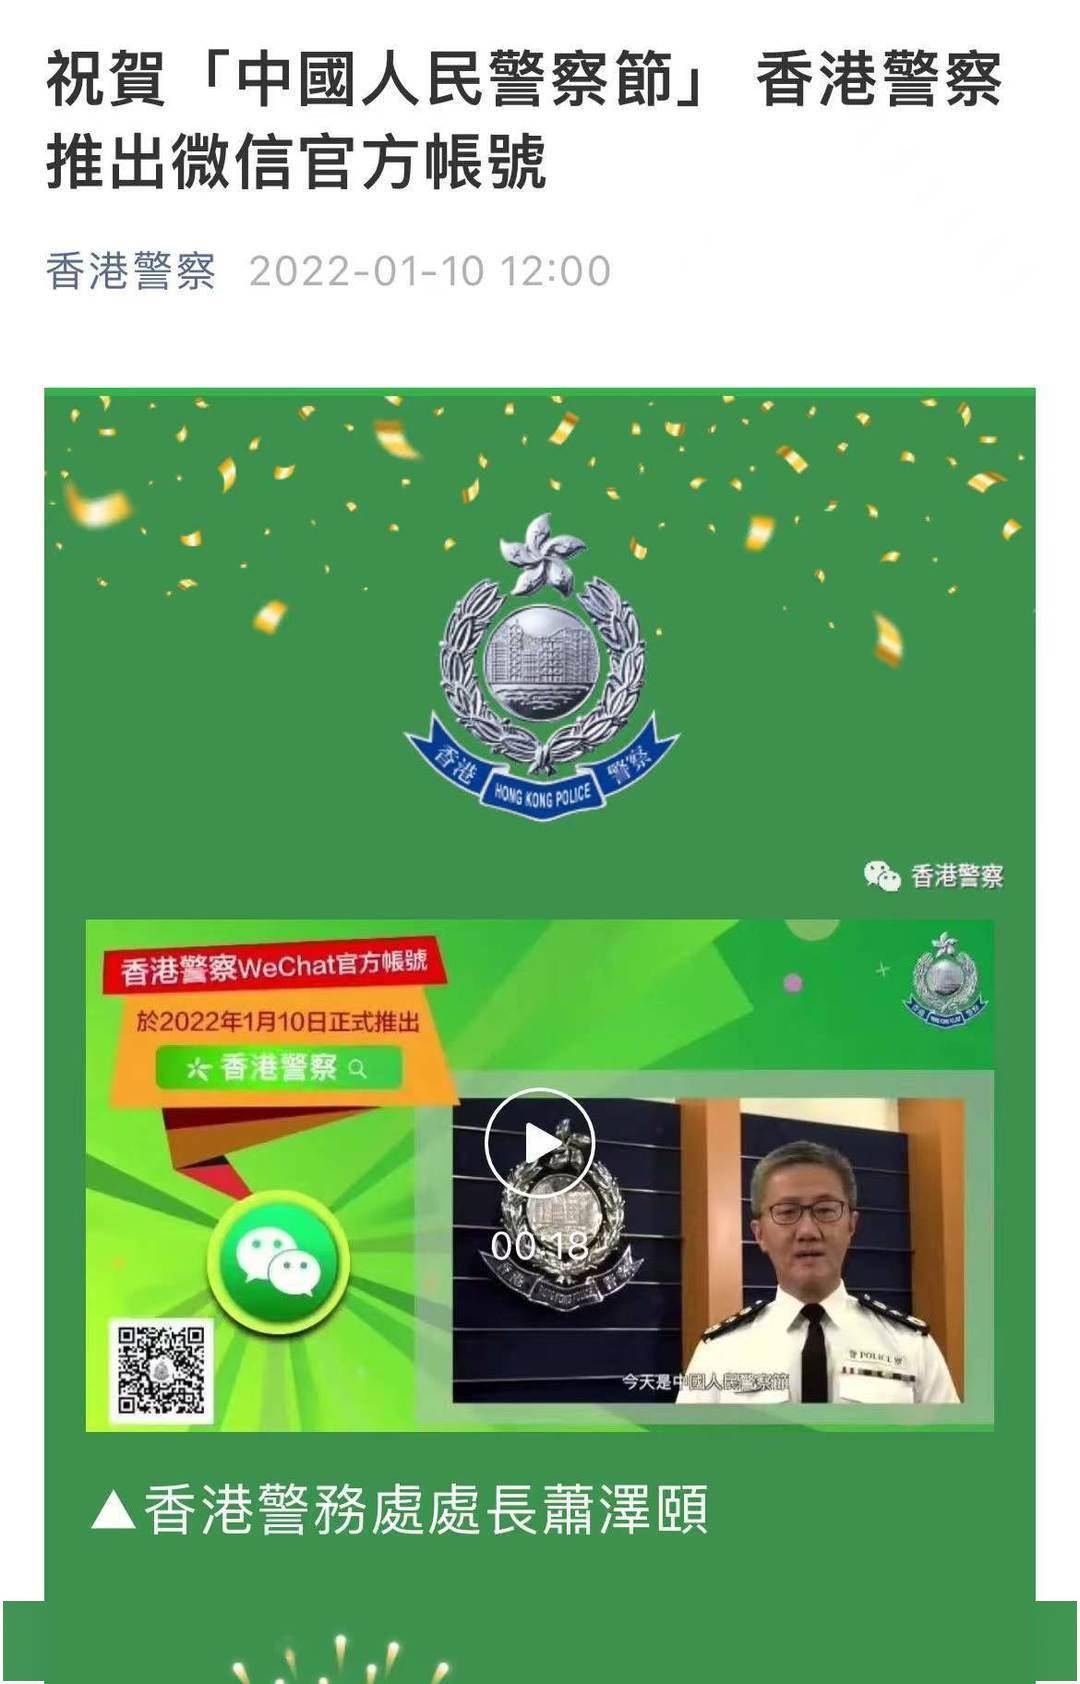 香港警察微信官方帐号正式推出祝贺中国人民警察节